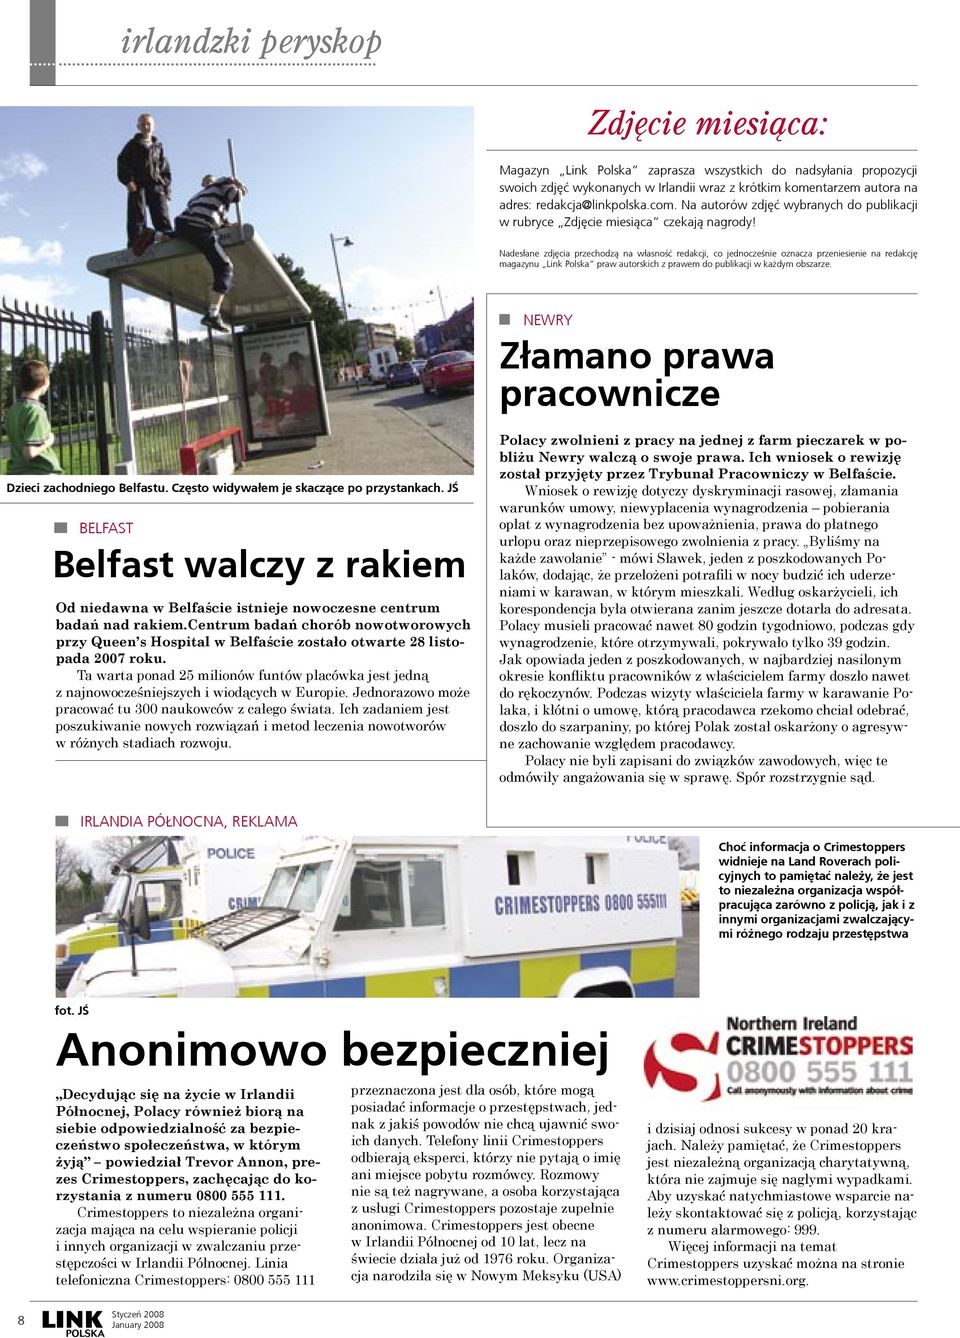 Nades³ane zdjêcia przechodz¹ na w³asnośæ redakcji, co jednocześnie oznacza przeniesienie na redakcjê magazynu Link Polska praw autorskich z prawem do publikacji w ka dym obszarze.